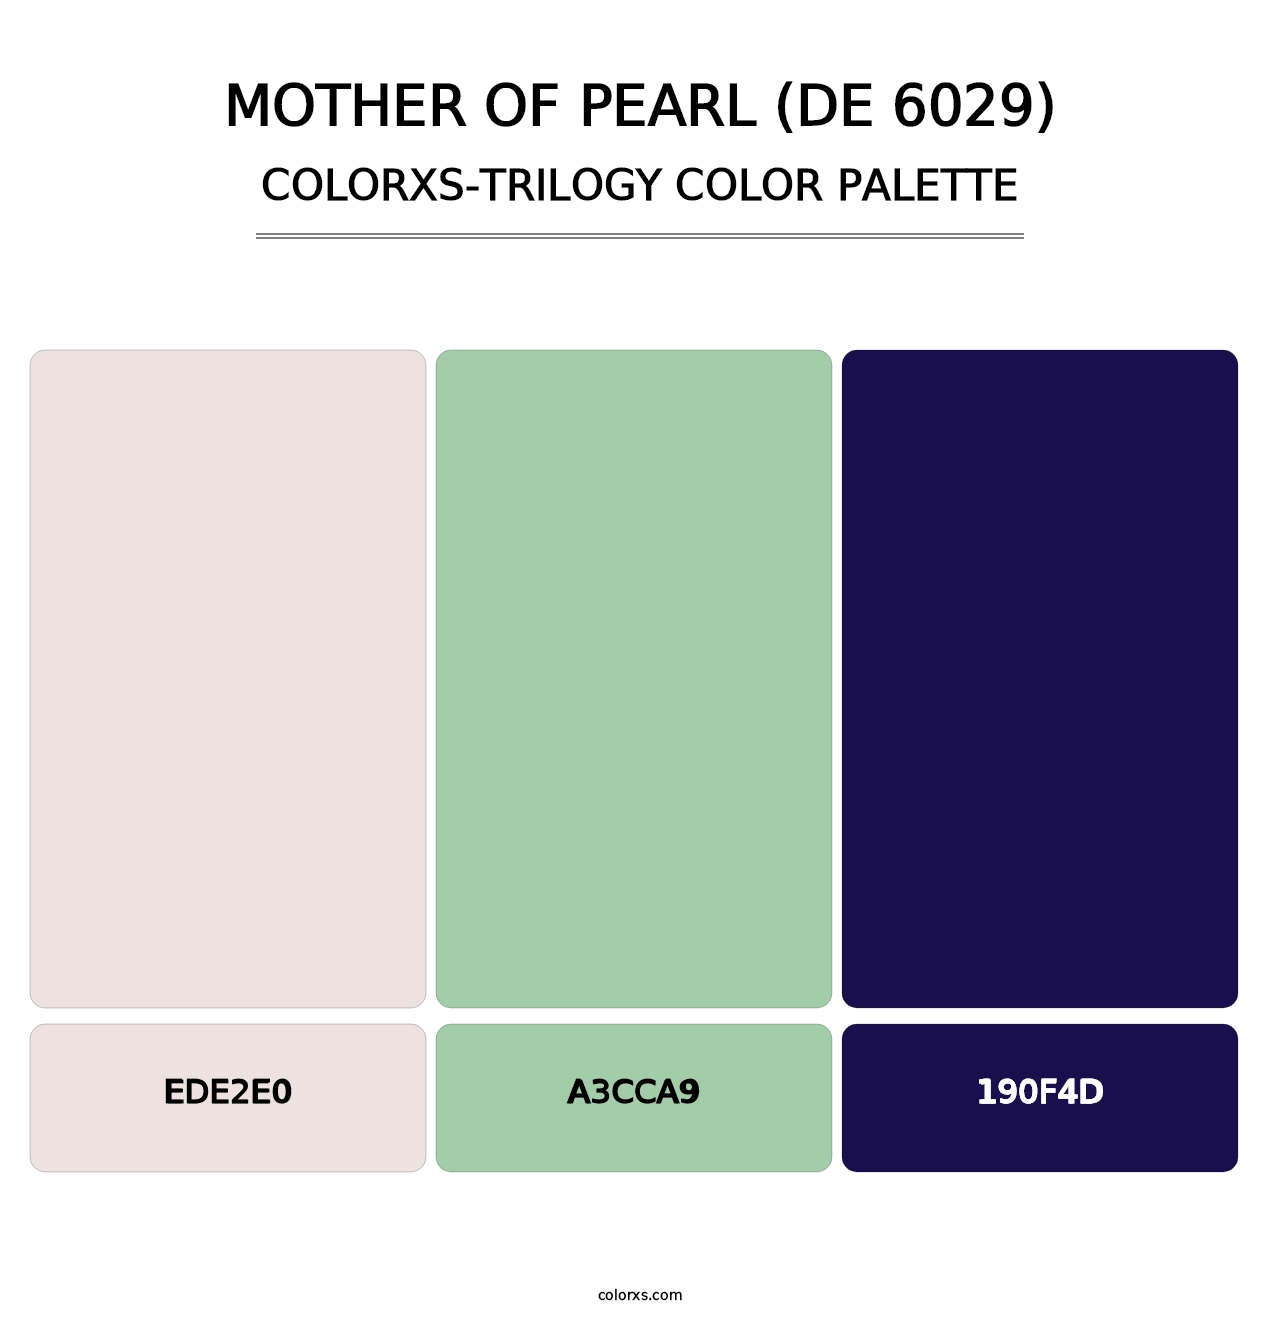 Mother of Pearl (DE 6029) - Colorxs Trilogy Palette